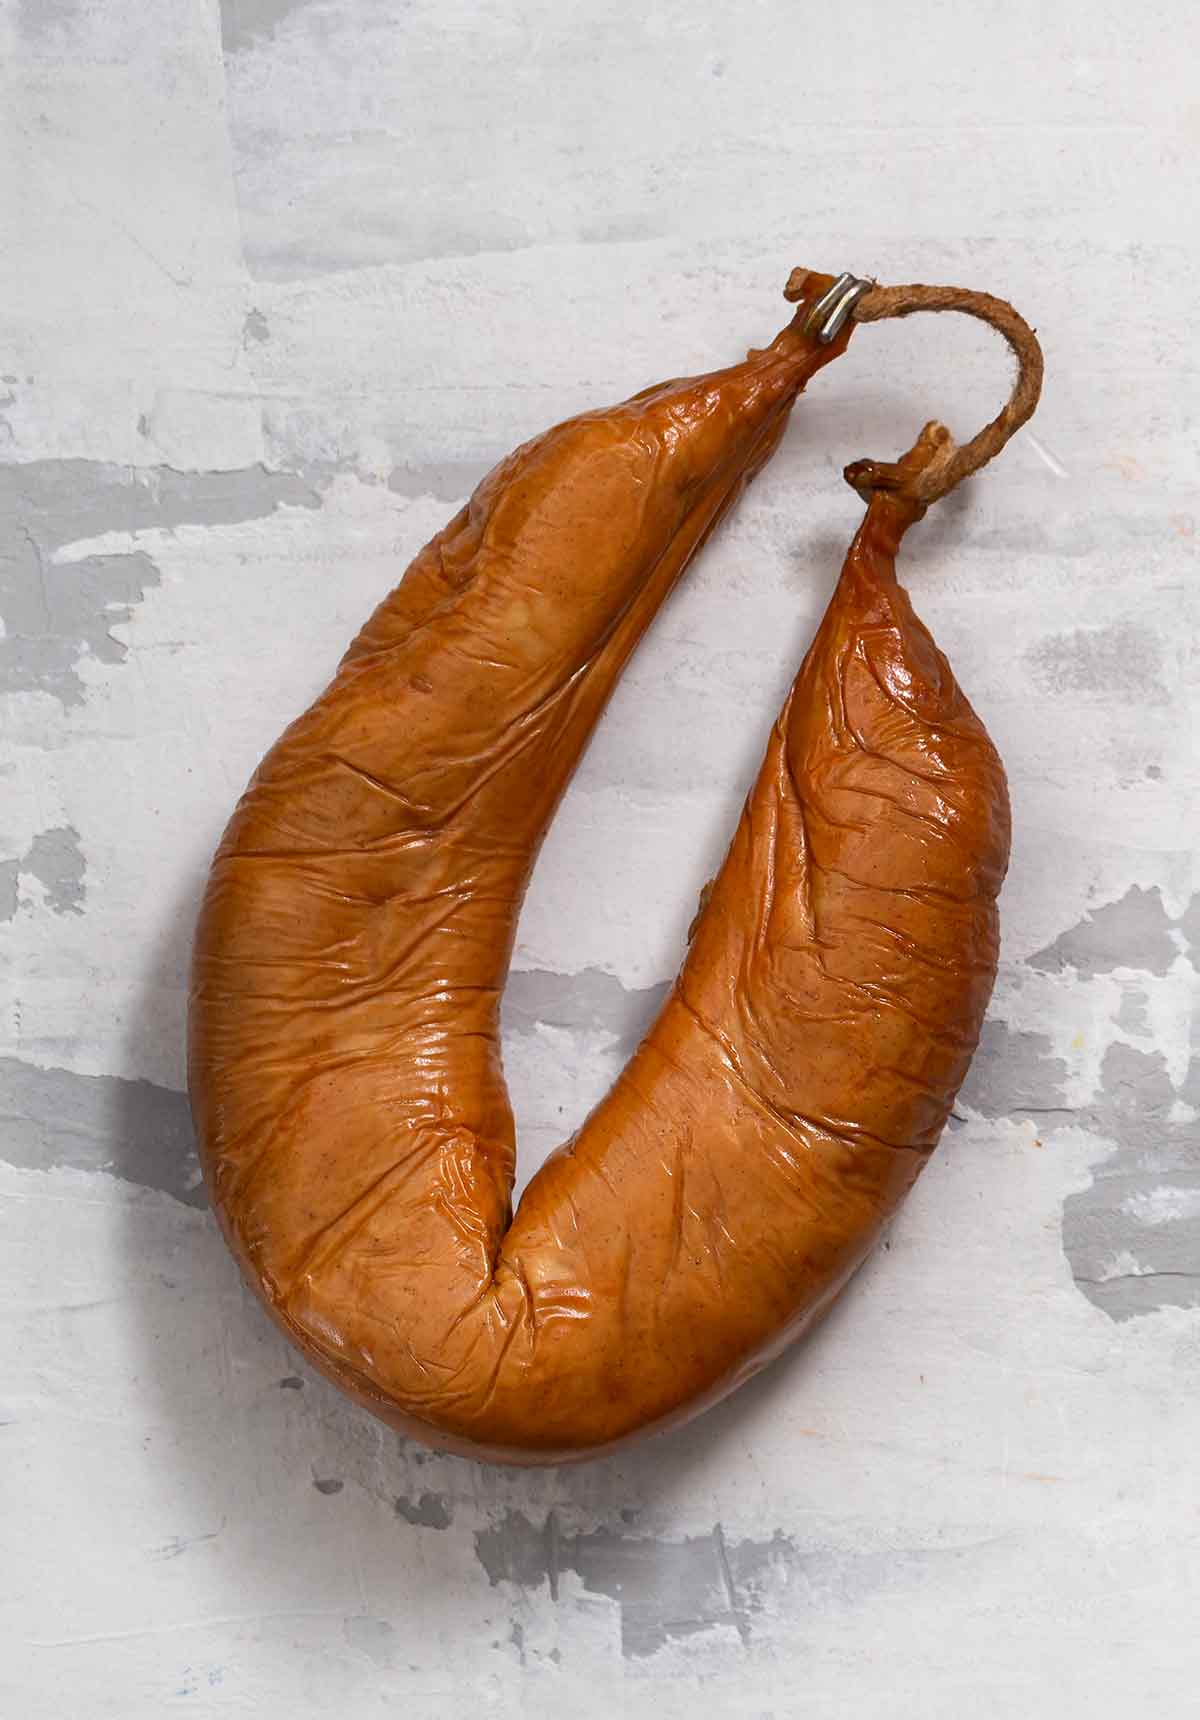 A link of Portuguese farinheira sausage